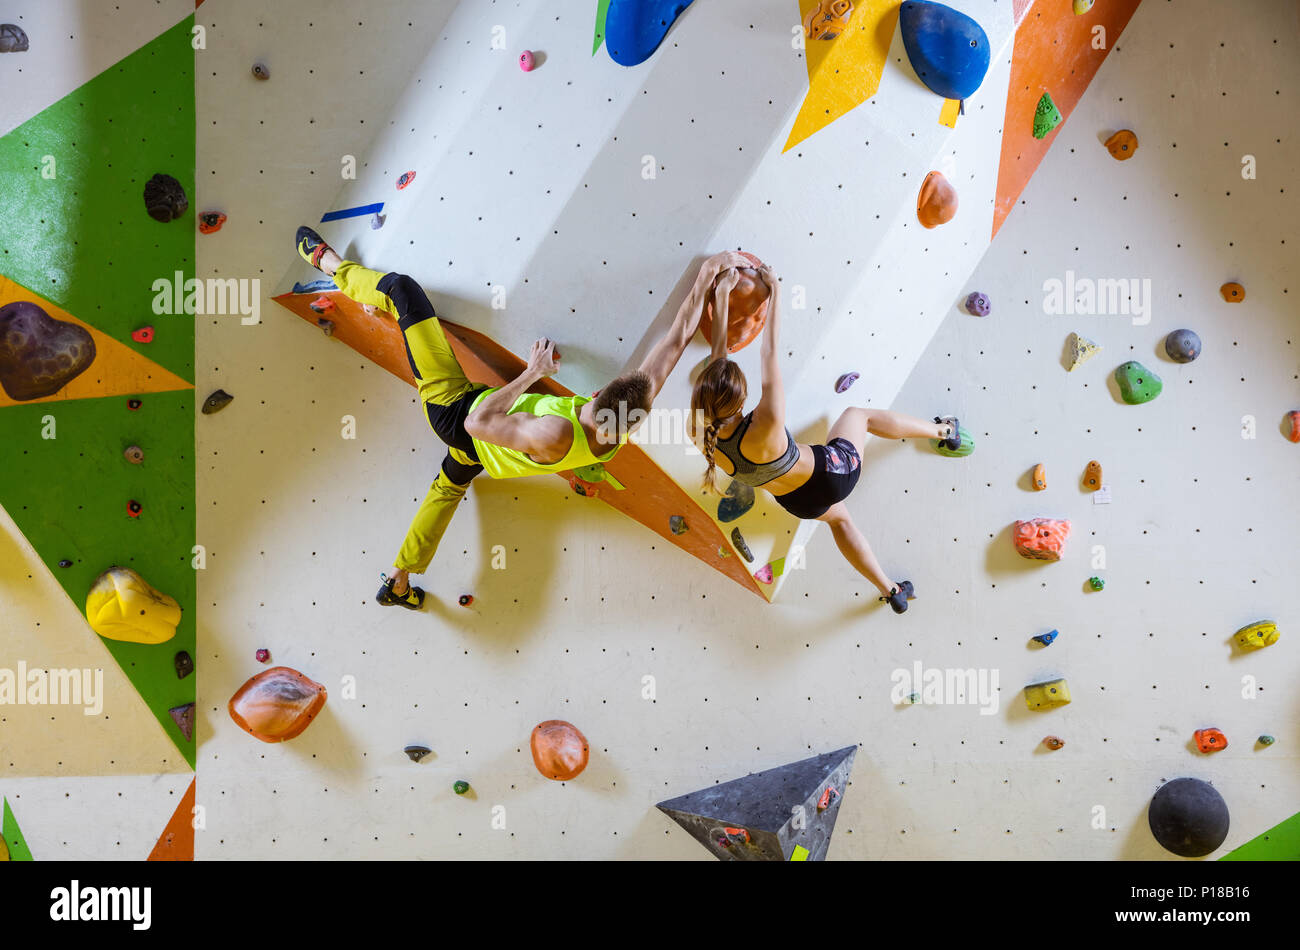 Kletterer in Kletterhalle. Junges Paar klettern Bouldern Probleme (Routen), packende gleichen Haltegriff. Stockfoto